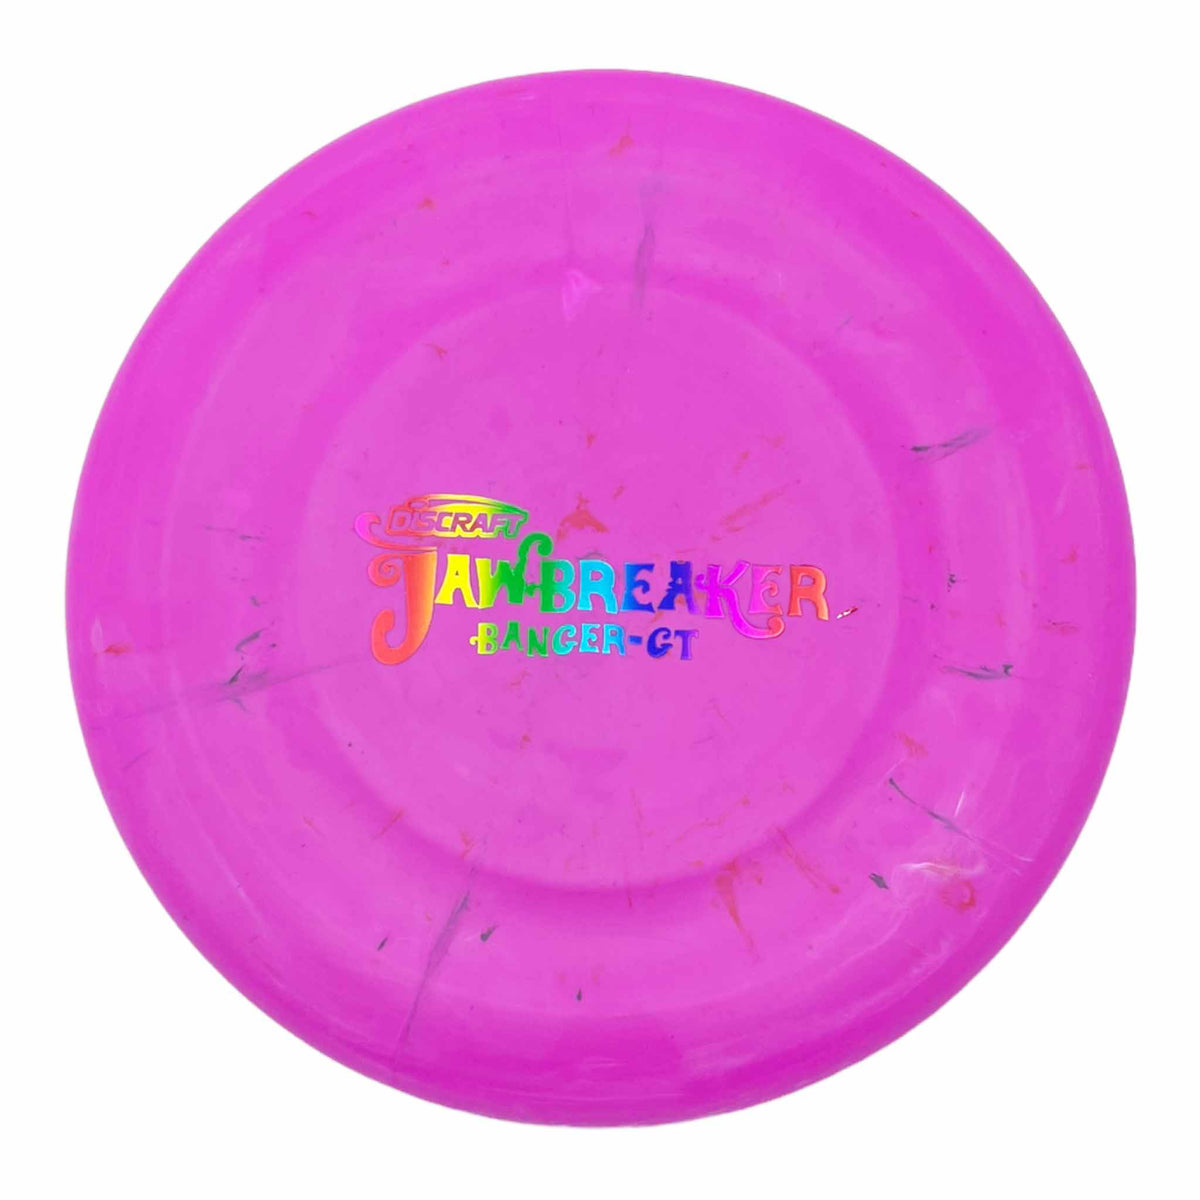 Discraft Jawbreaker Banger-GT putter - Pink